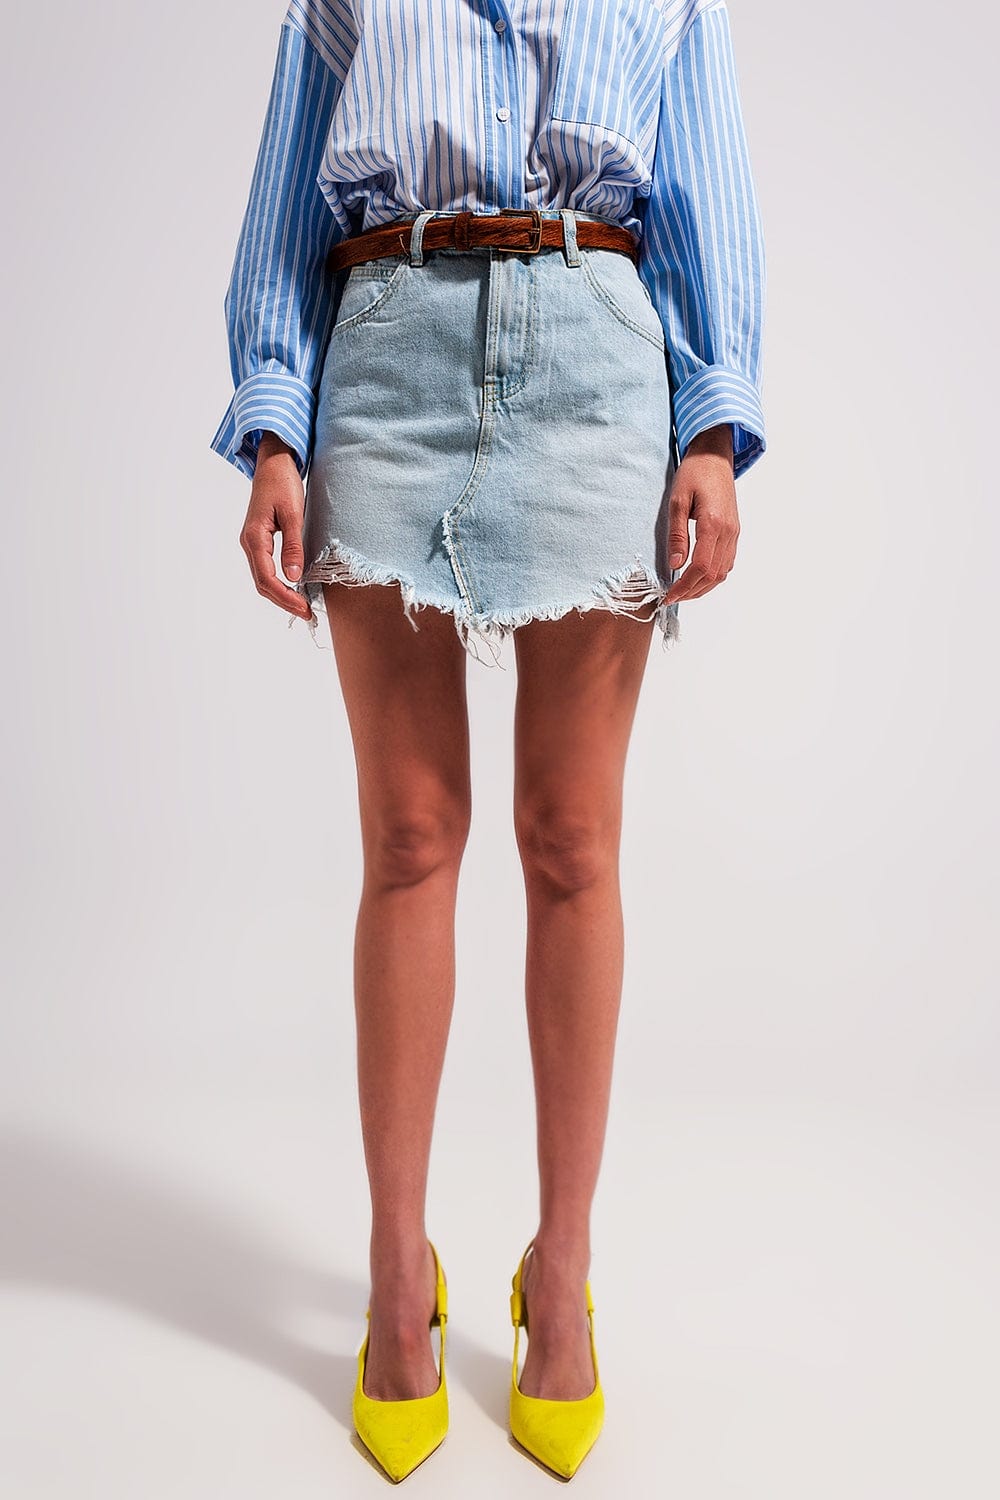 Q2 Women's Skirt Denim Mini Skirt with Raw Hem in Light Wash Blue